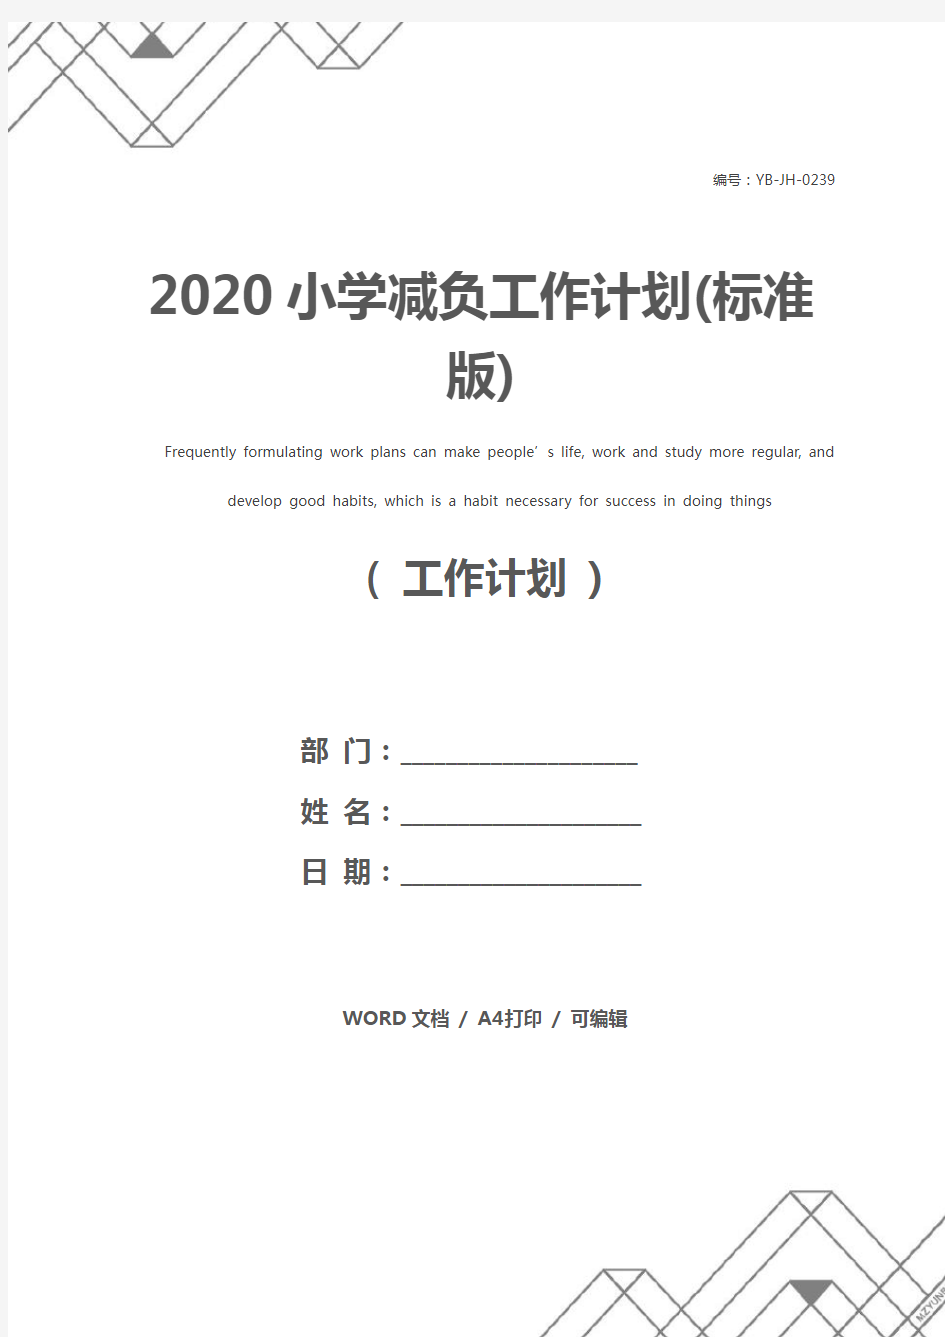 2020小学减负工作计划(标准版)